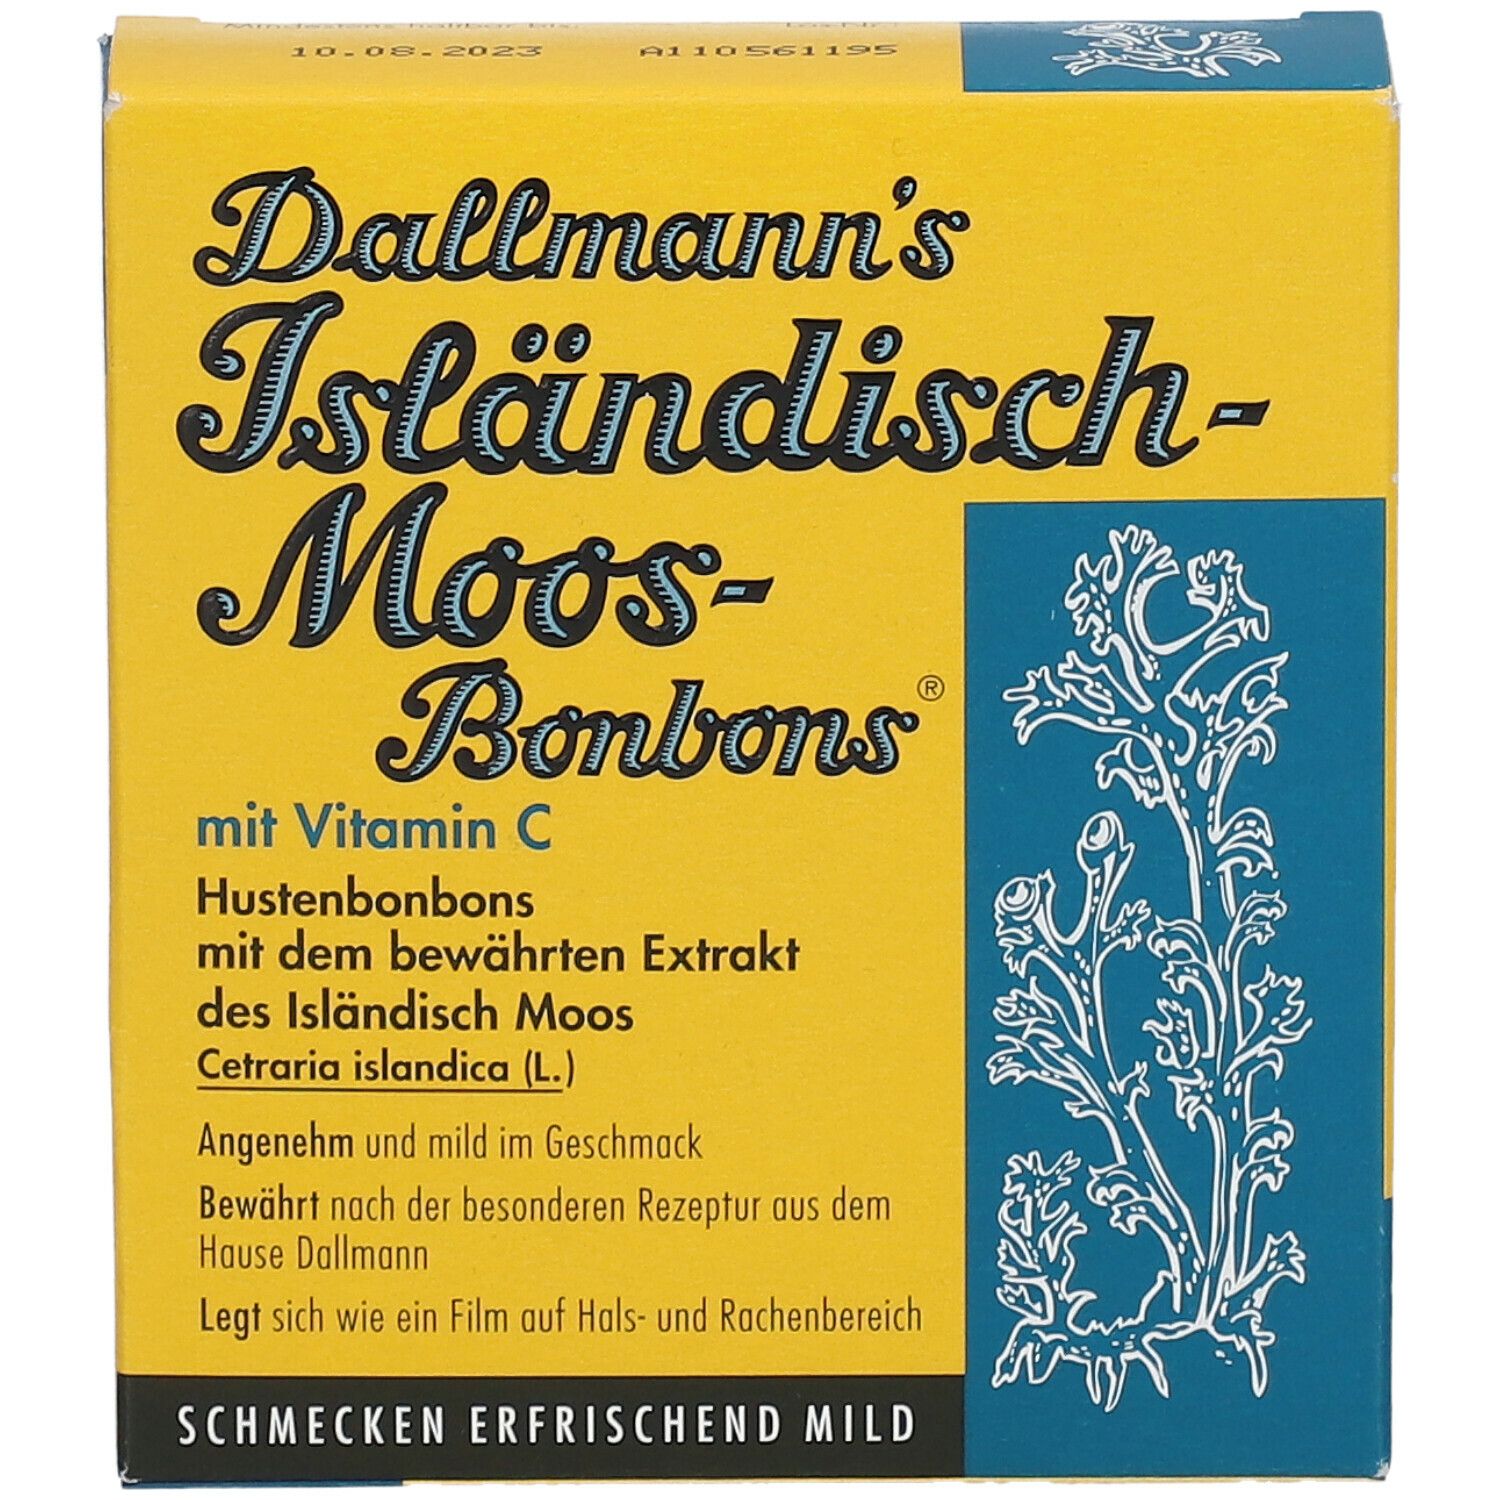 Dallmanns Isländisch-Moos-Bonbons mit Vitamin C